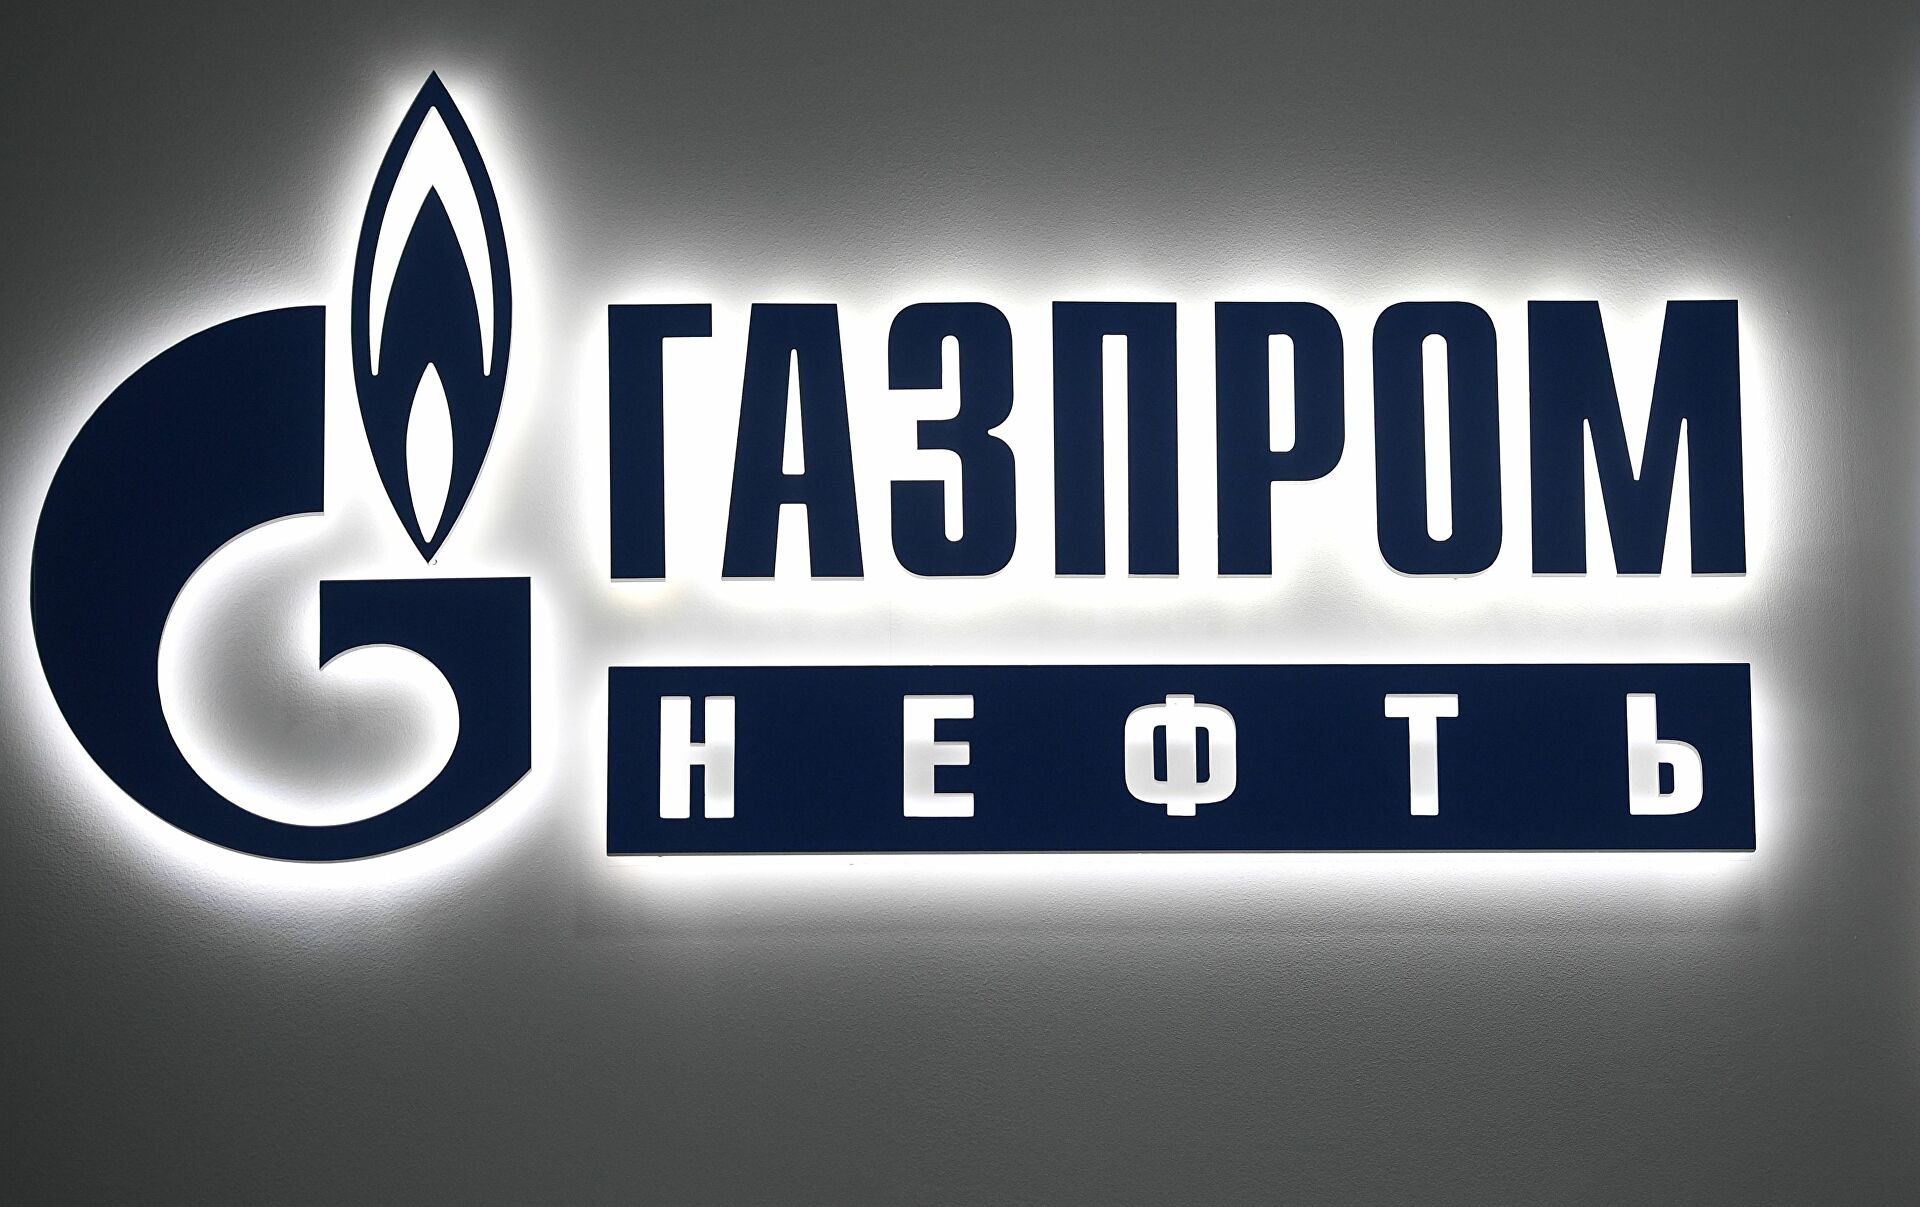 Газпром нефть логотип